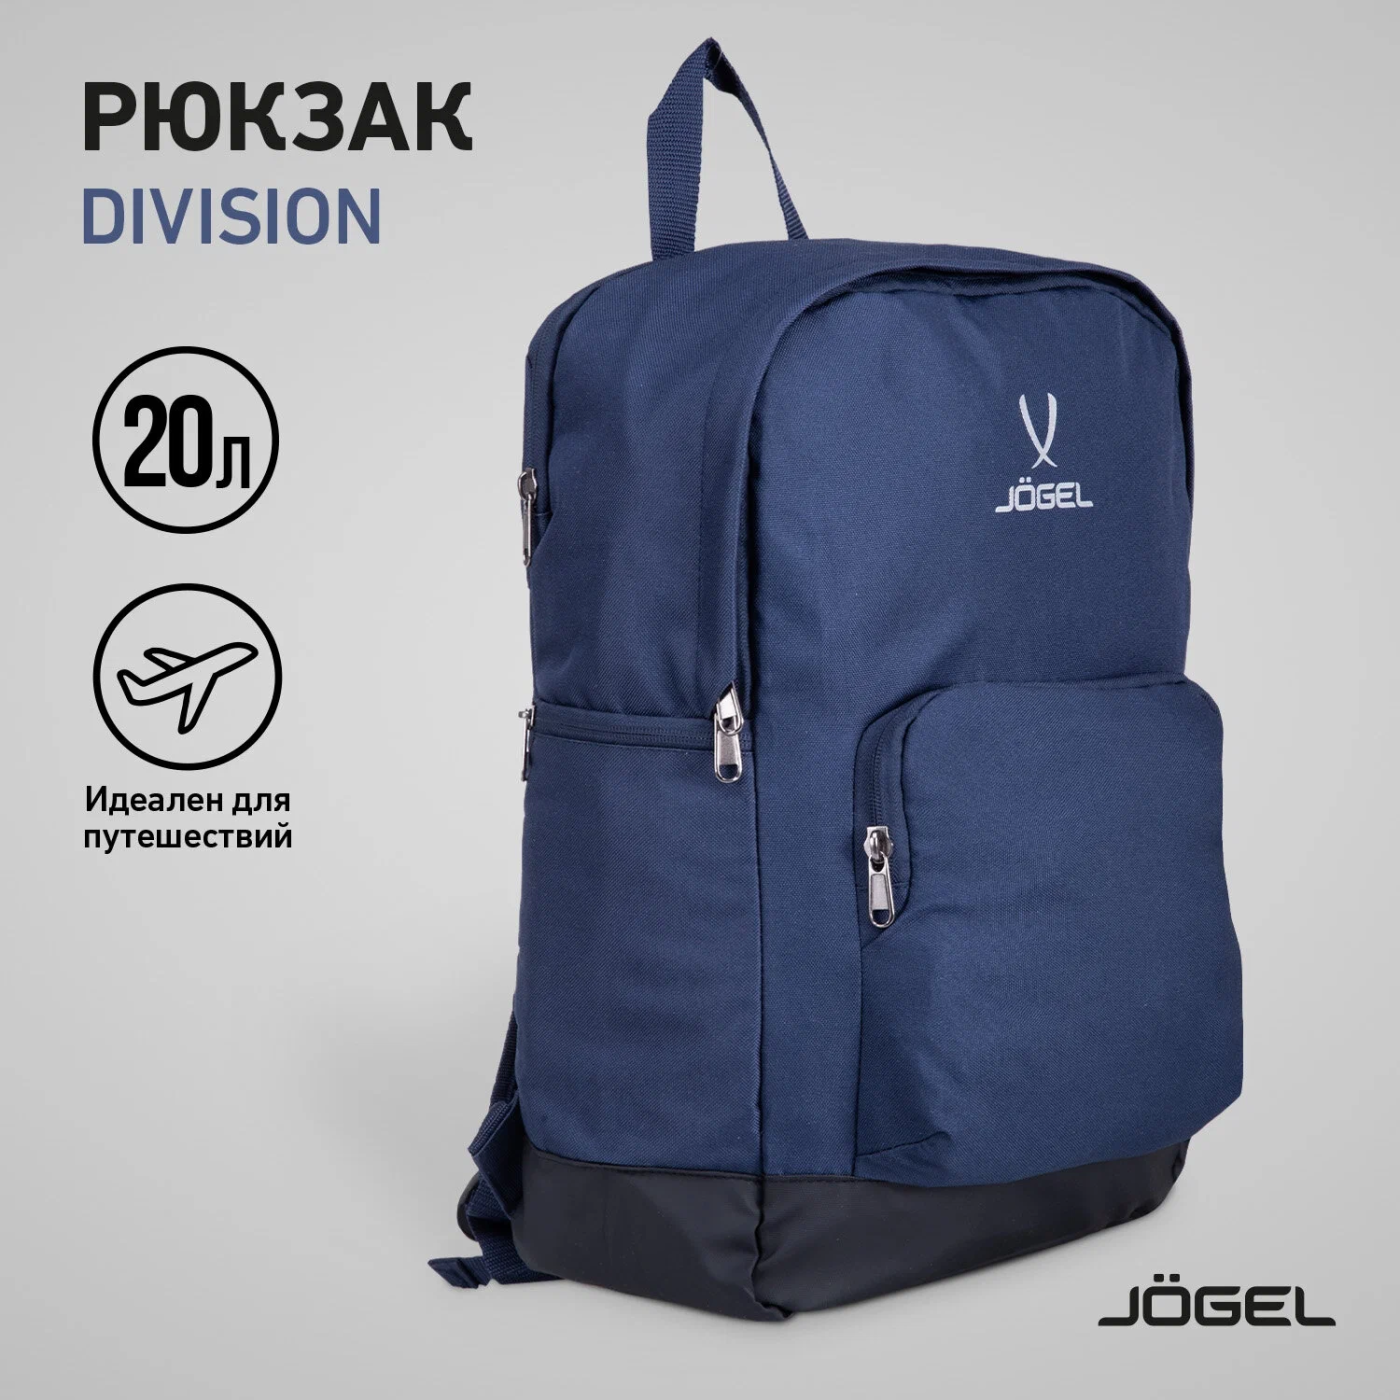 Реальное фото Рюкзак Jogel Division Travel Backpack JD4BP0121.Z4 темно-синий 19706 от магазина СпортЕВ